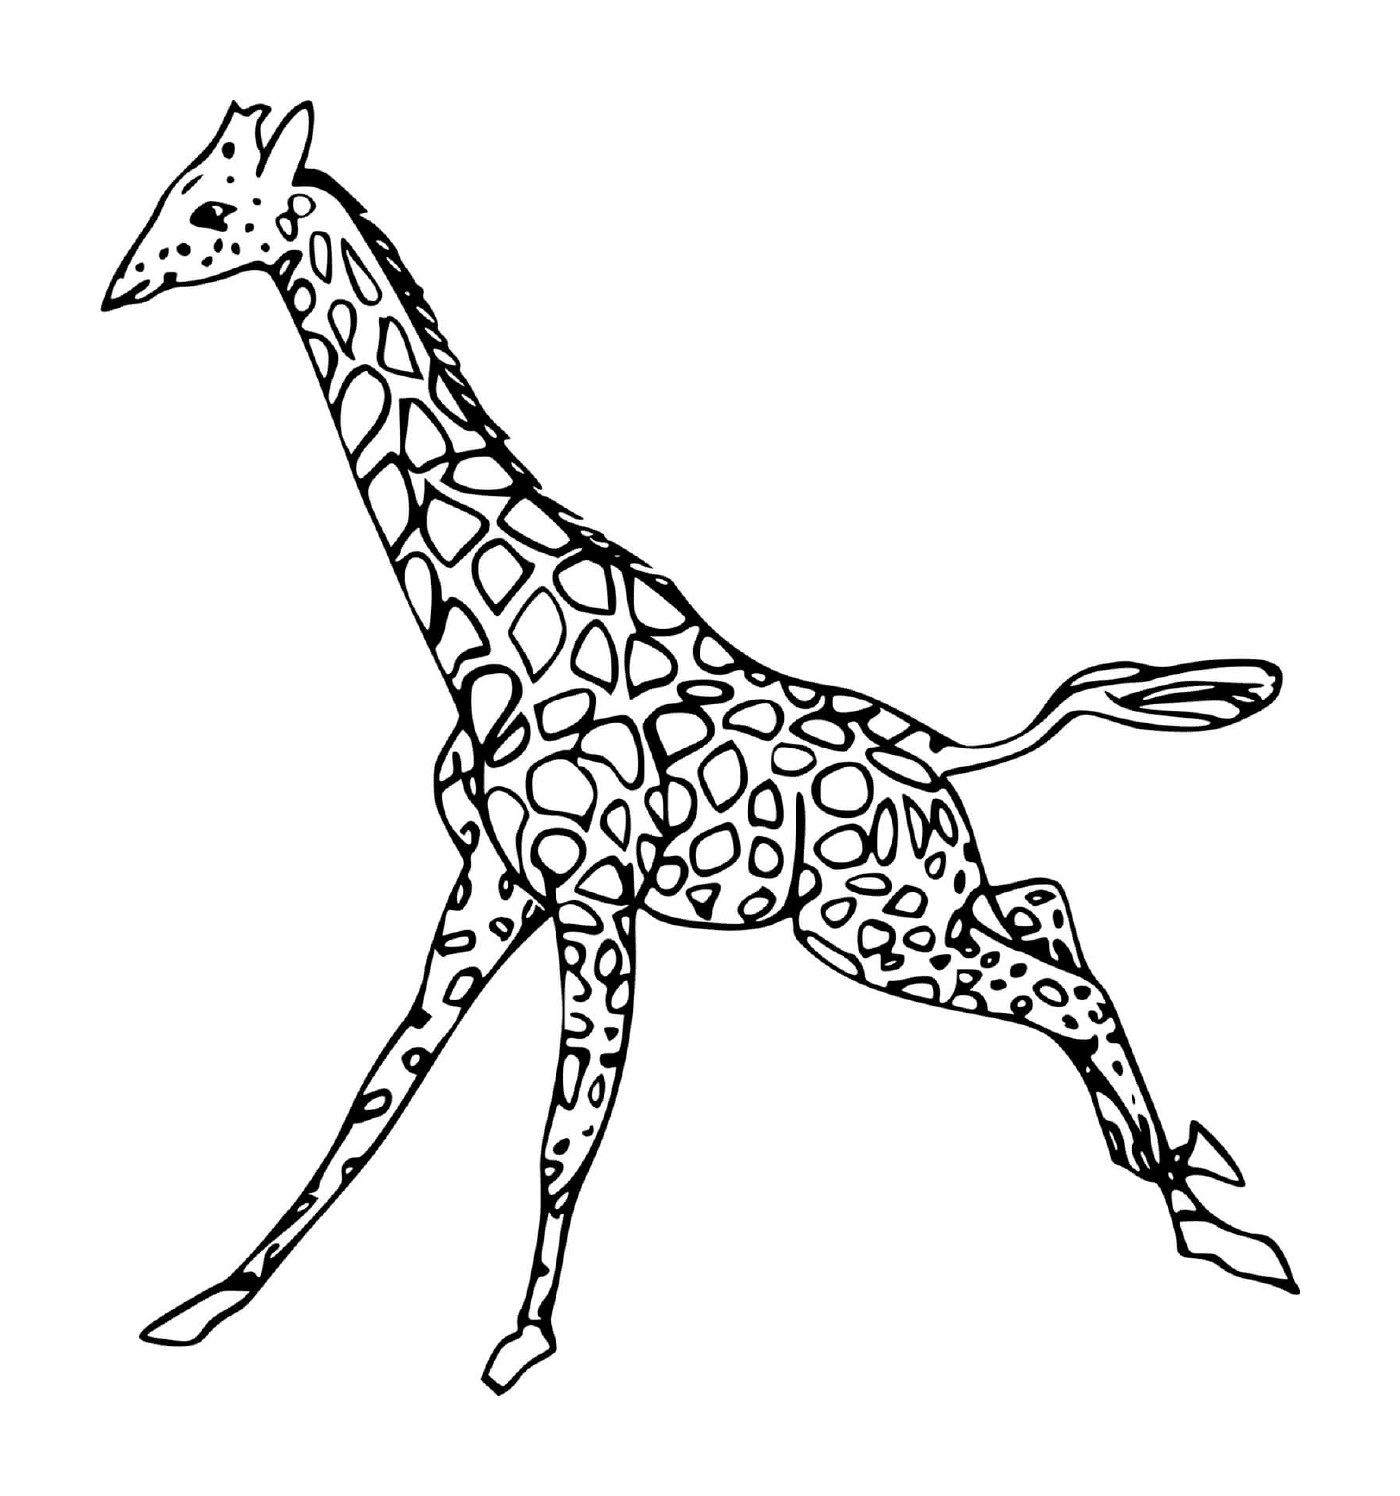  Girafe in esecuzione 